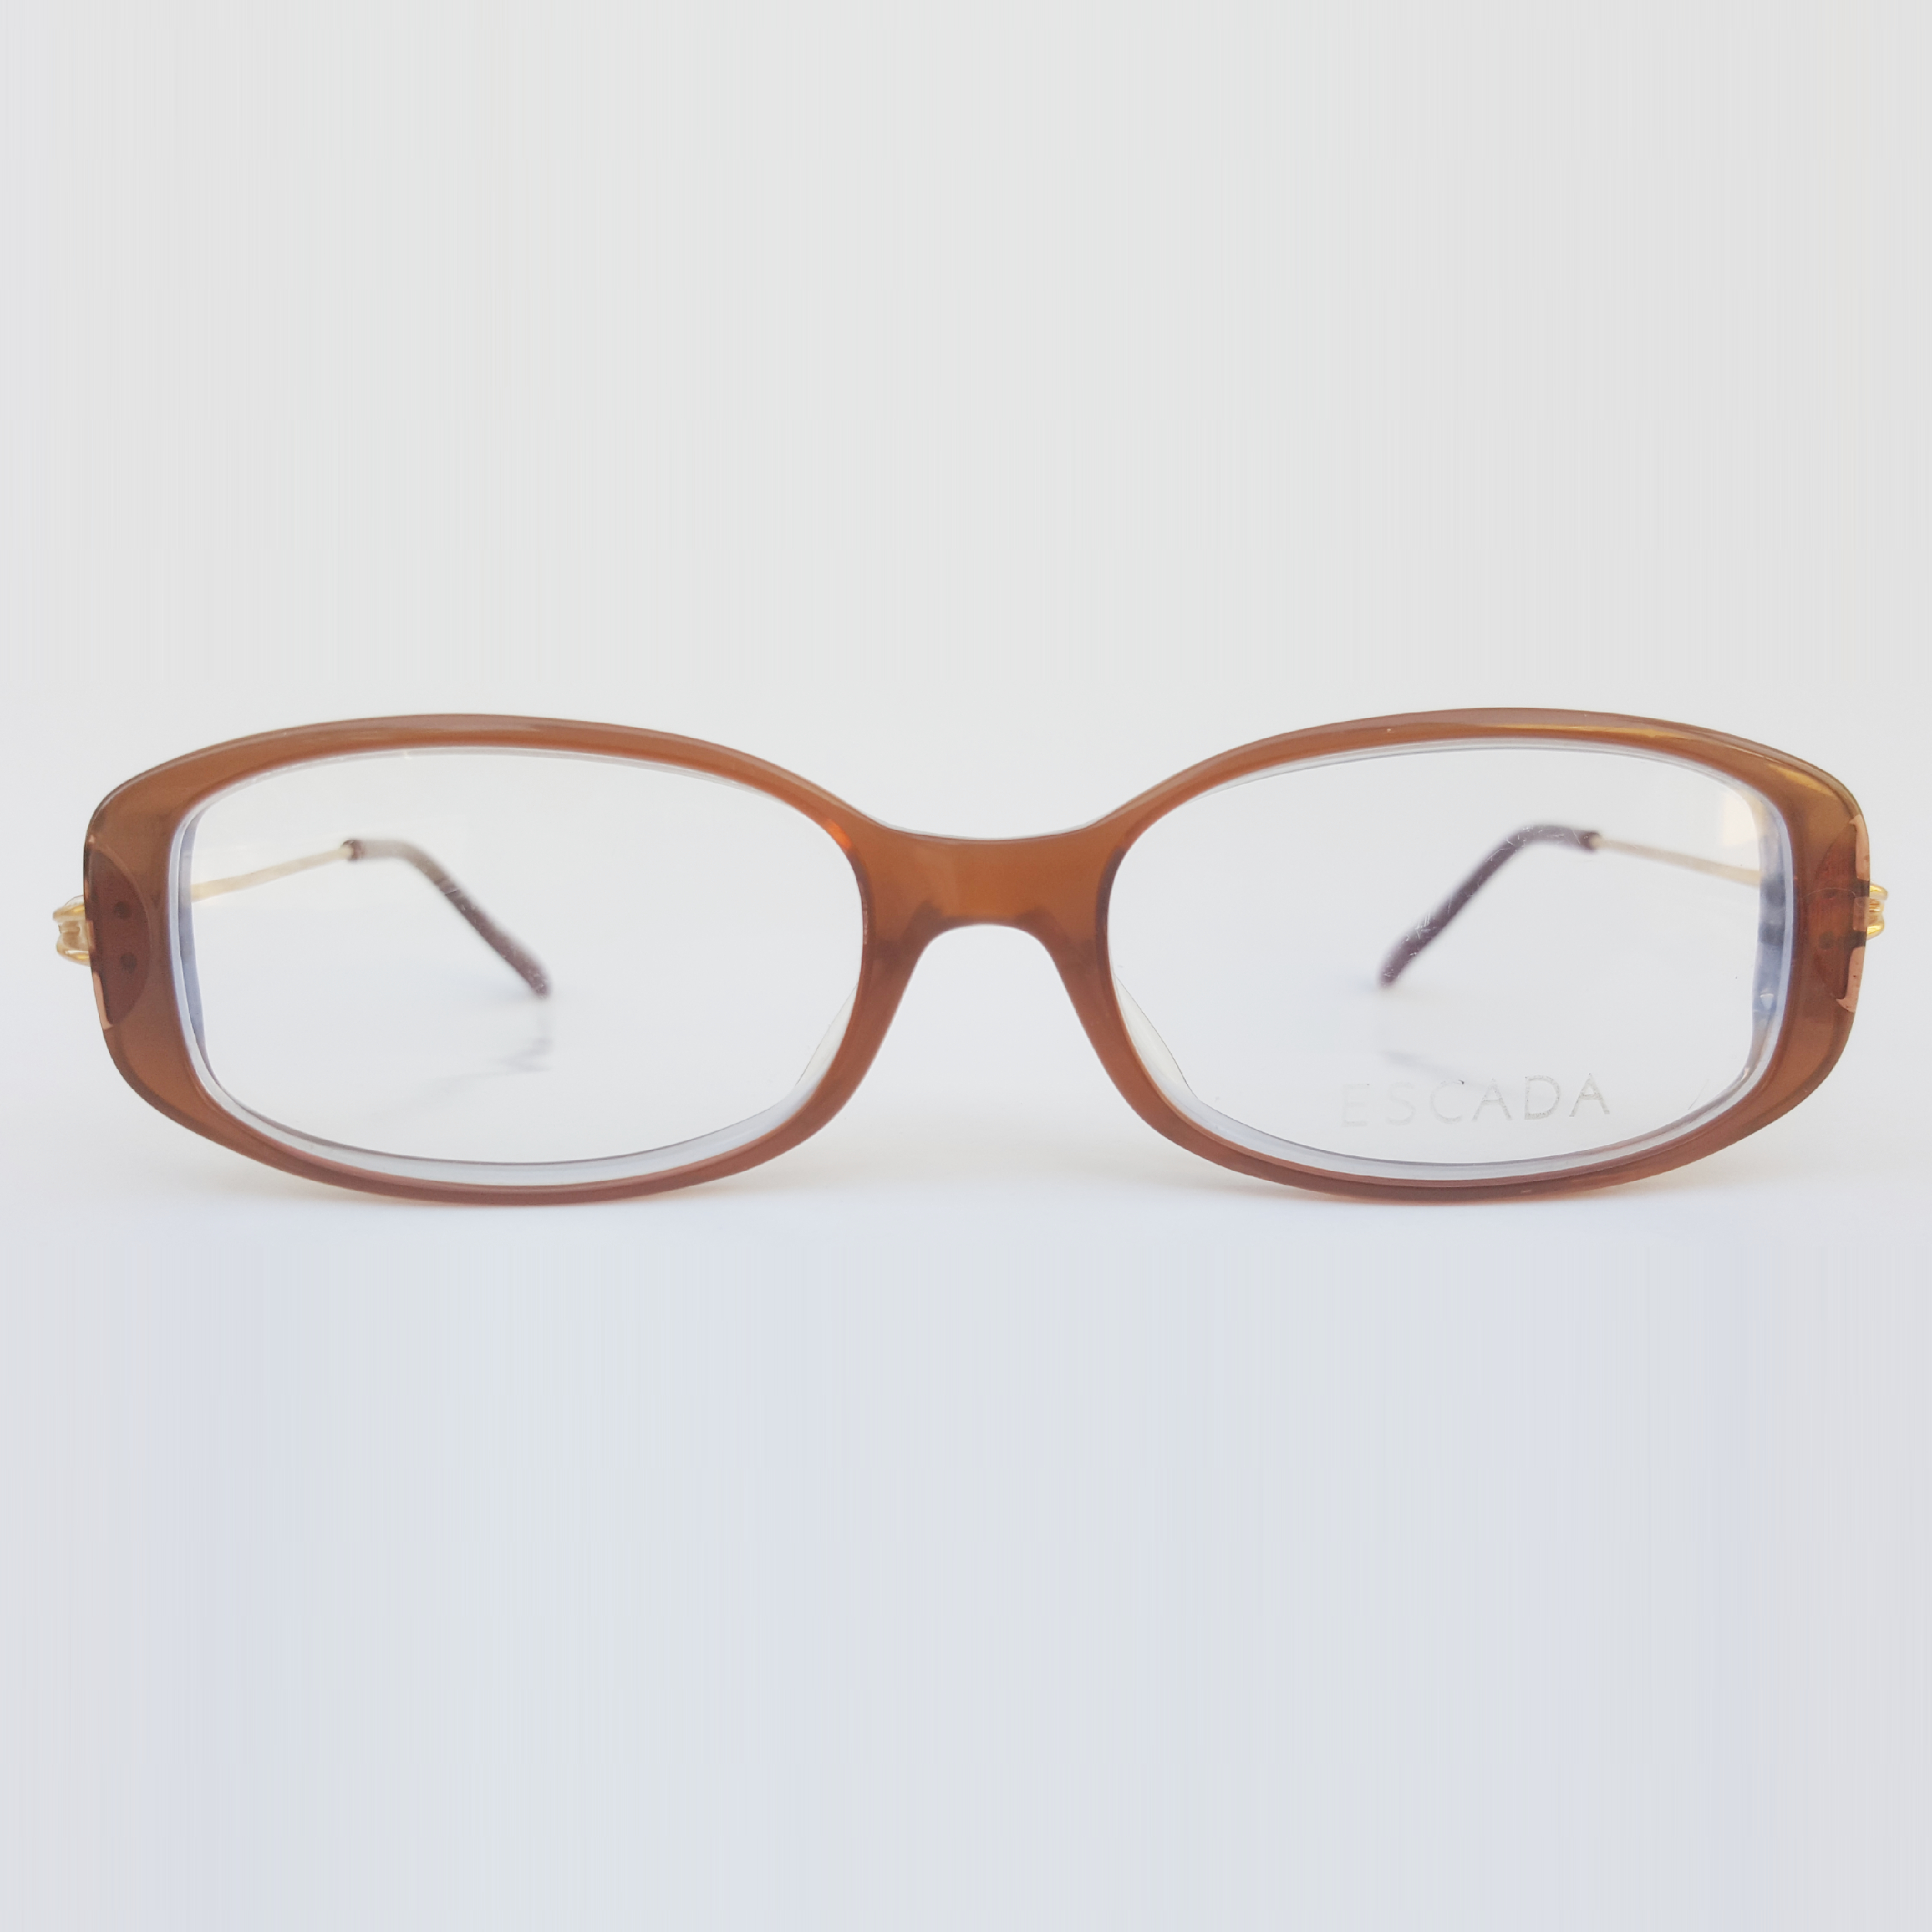 فریم عینک طبی زنانه اسکادا مدل E0190